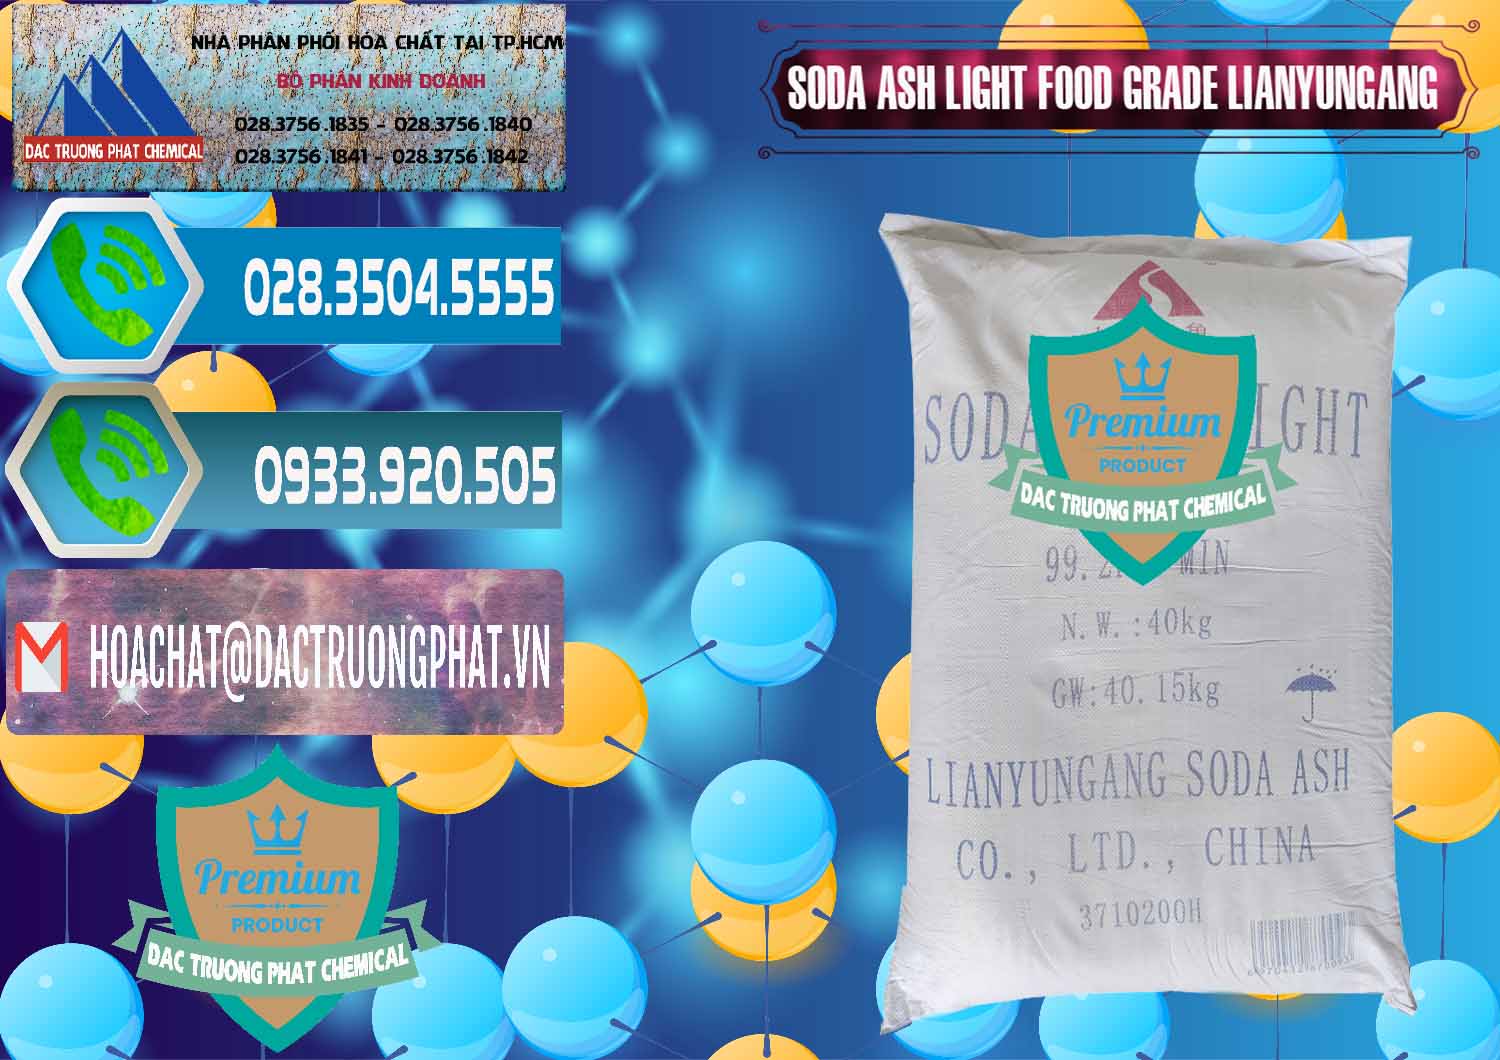 Đơn vị chuyên phân phối ( bán ) Soda Ash Light - NA2CO3 Food Grade Lianyungang Trung Quốc - 0222 - Cty cung cấp & phân phối hóa chất tại TP.HCM - congtyhoachat.net